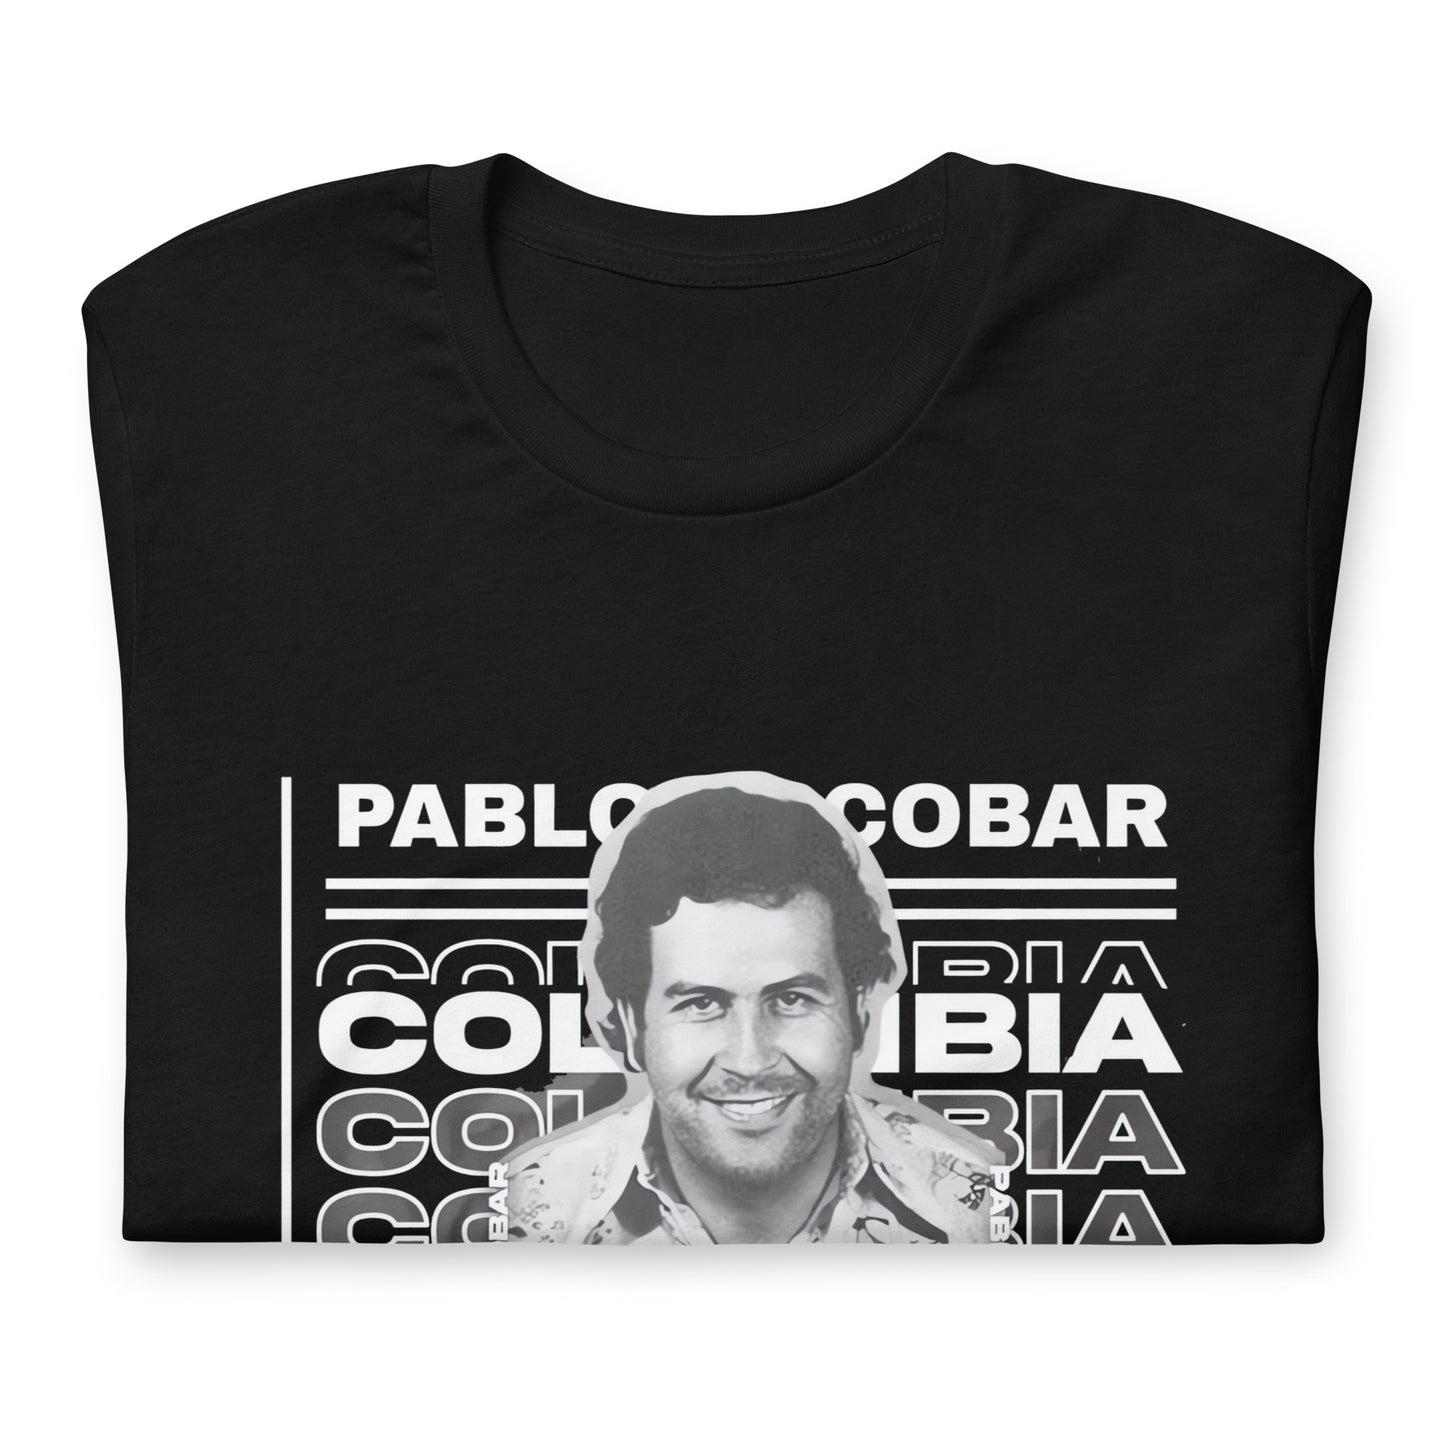 Pablo Escobar Colombia